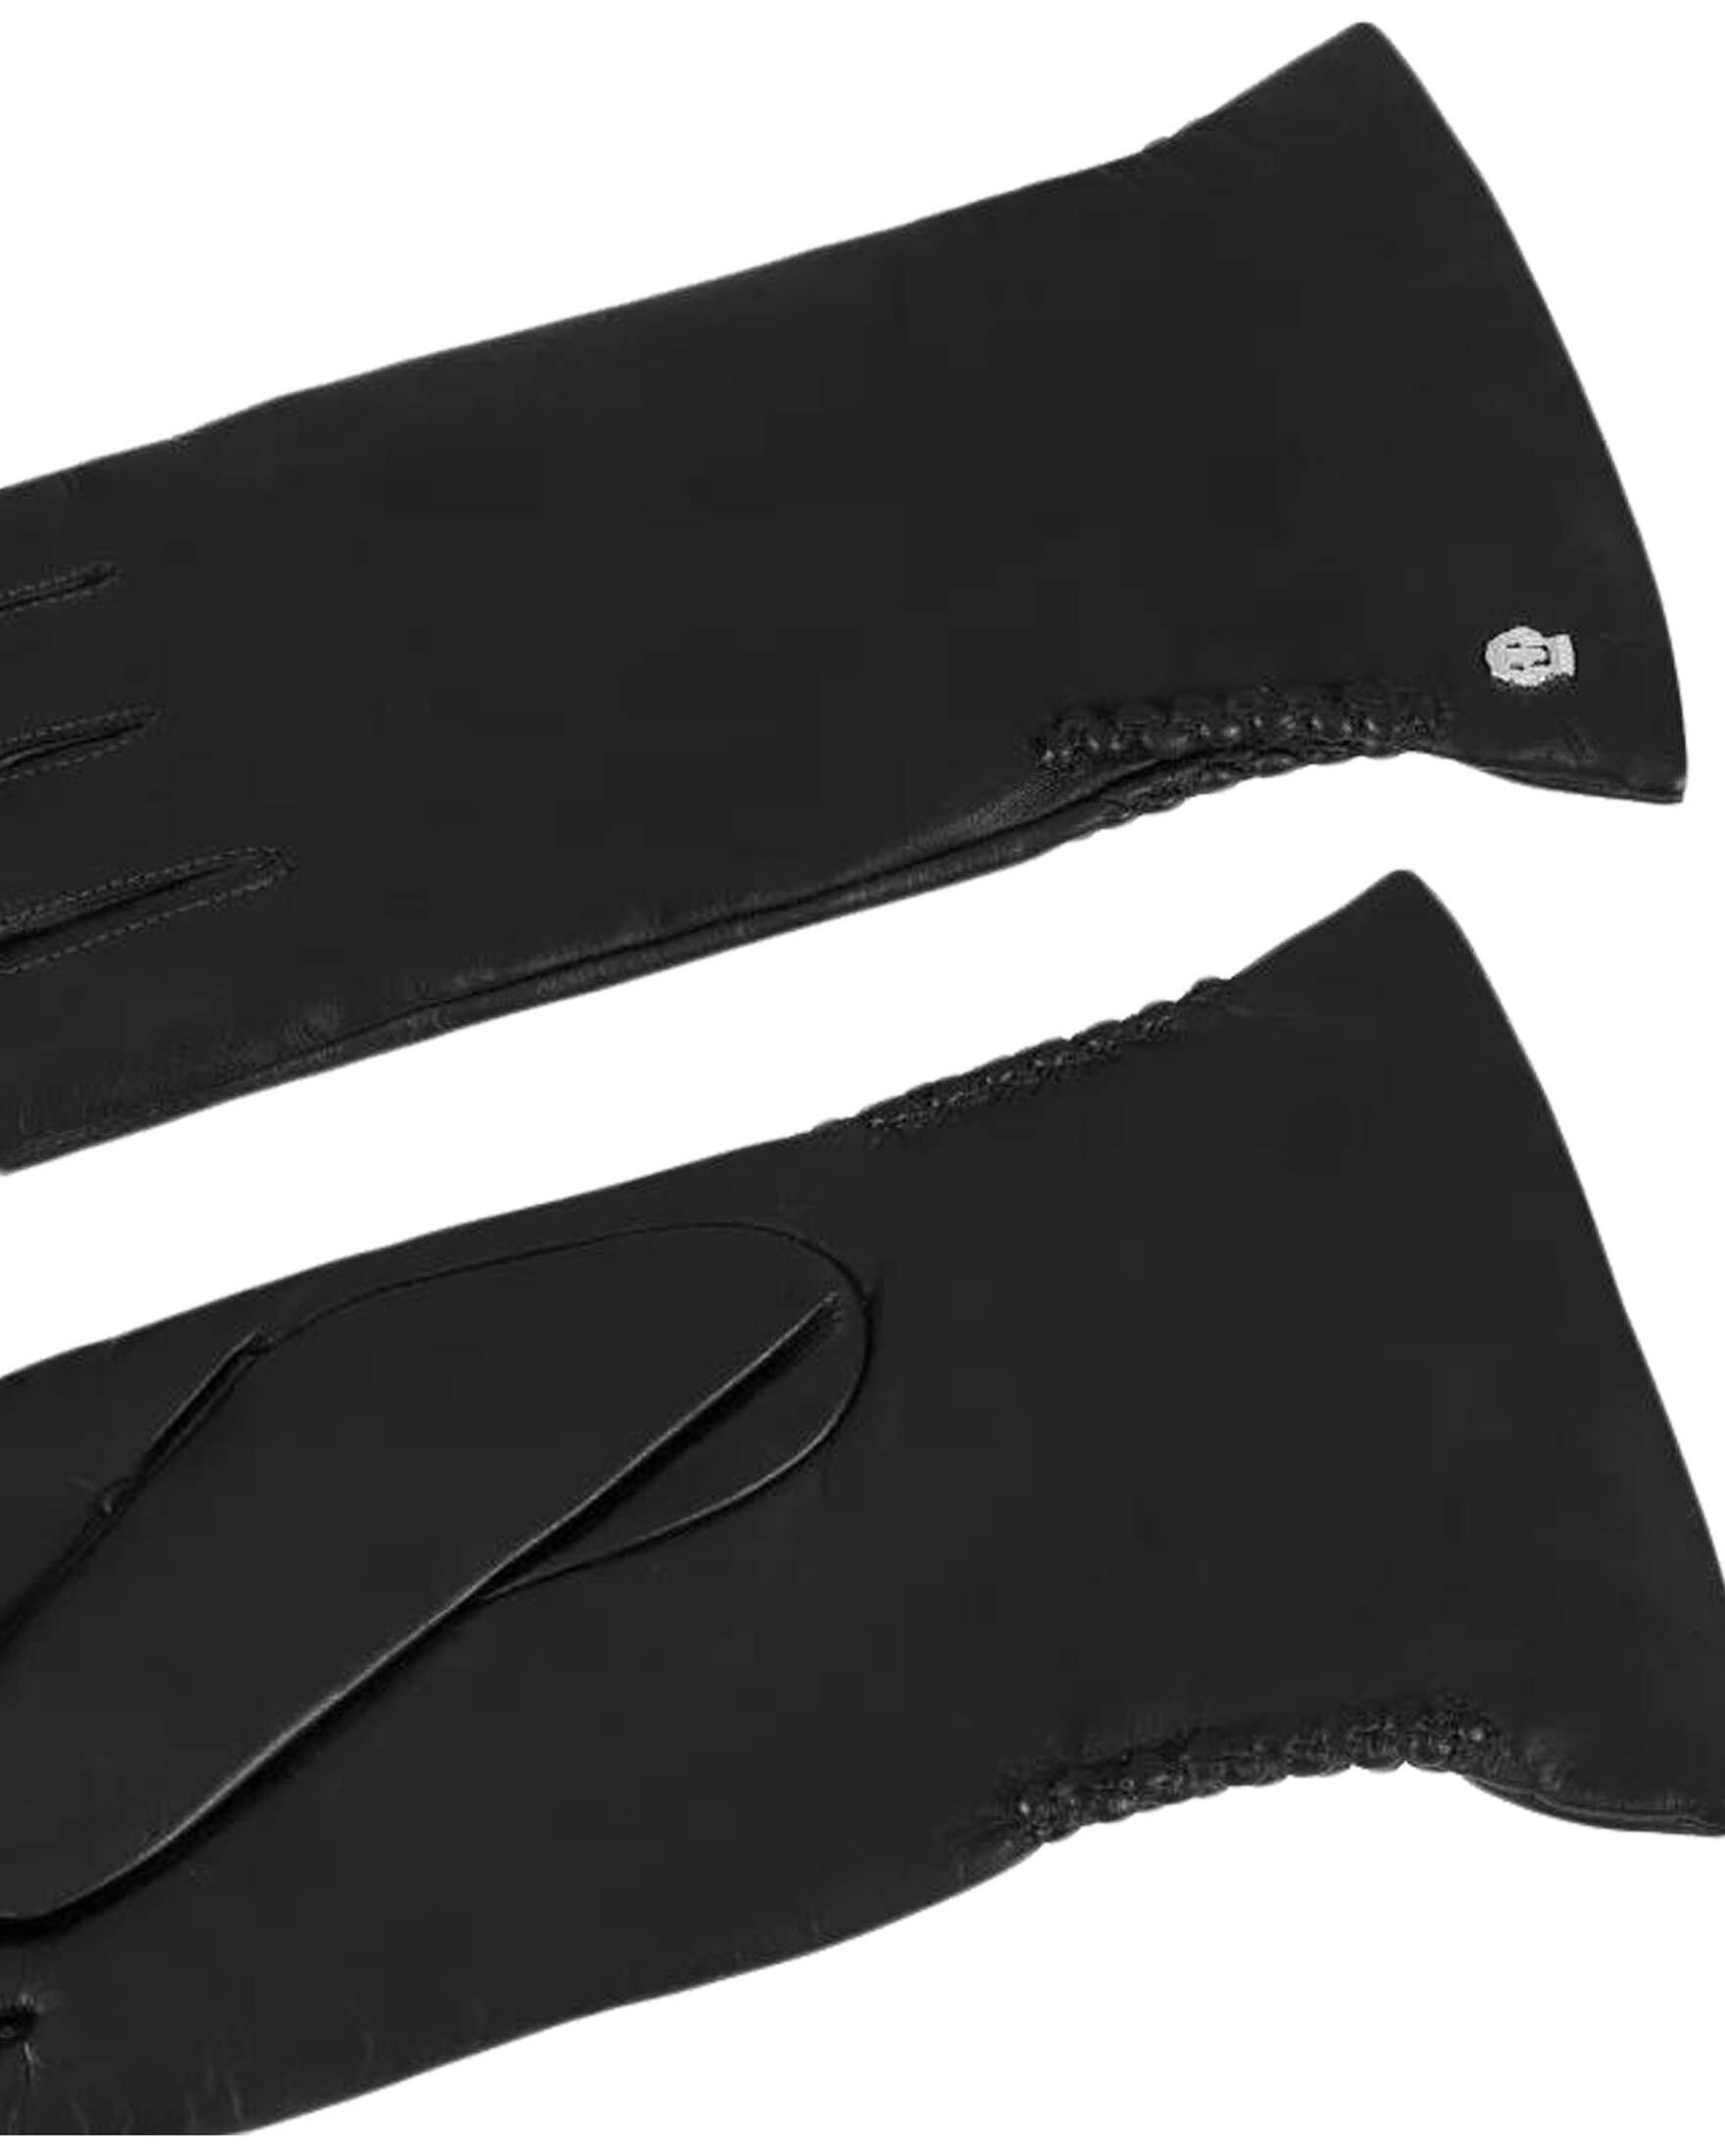 (15) Lederhandschuhe SPORTS Roeckl Handschuhe Damen schwarz